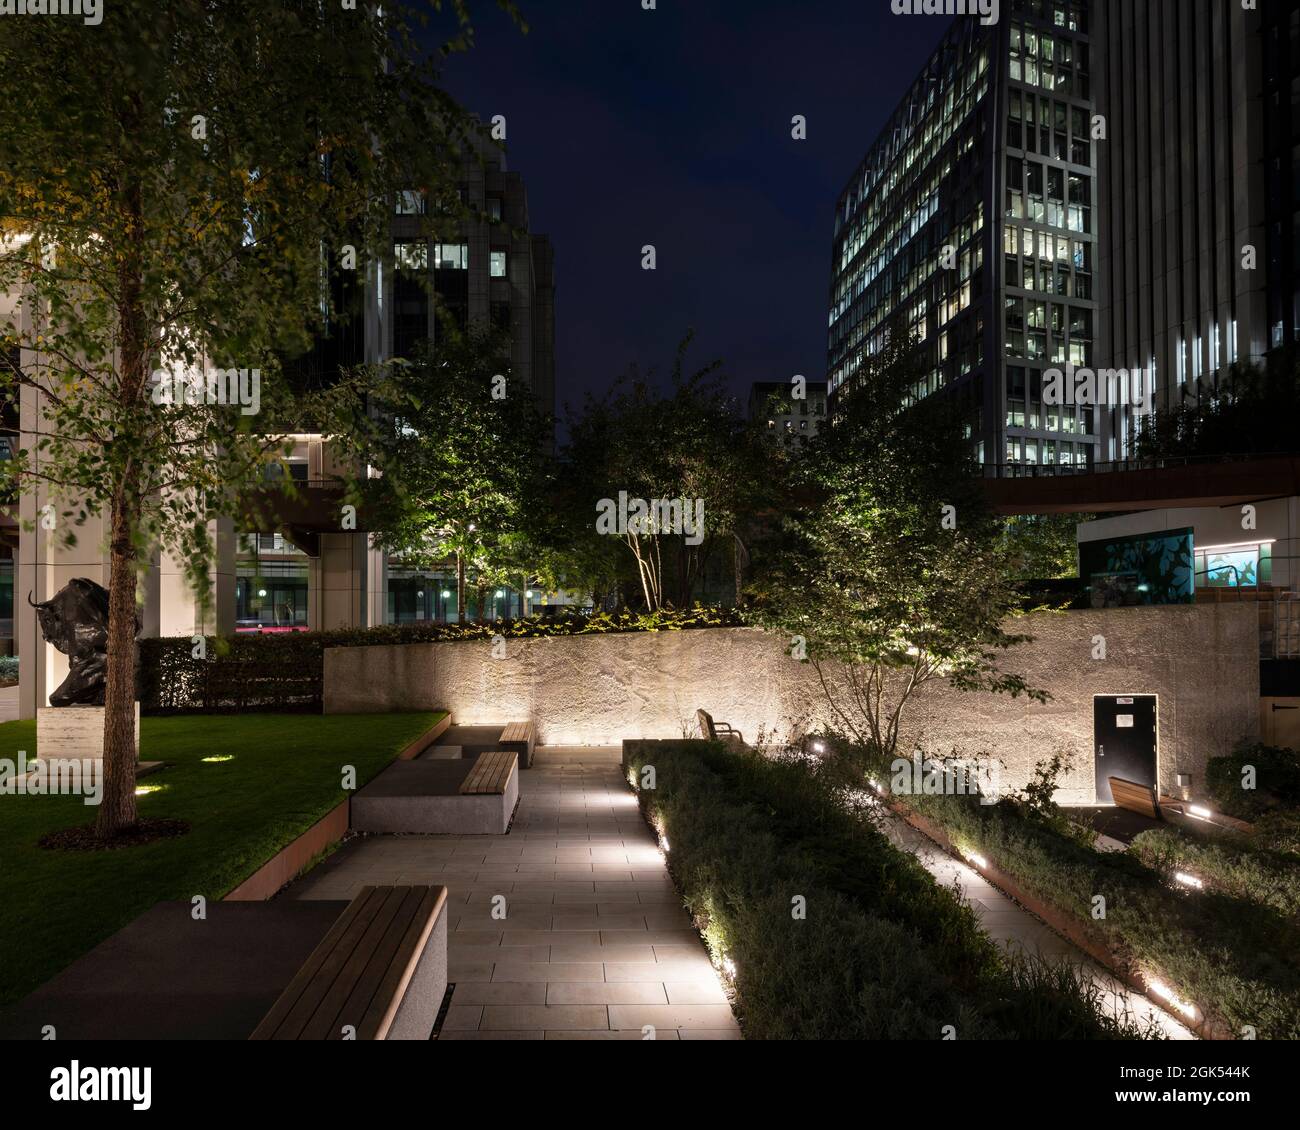 Salters' Garden bei Nacht mit Landschaftsgestaltung und Beleuchtung mit City Behind. London Wall Place, London, Großbritannien. Architekt: Make Ltd, 2019. Stockfoto